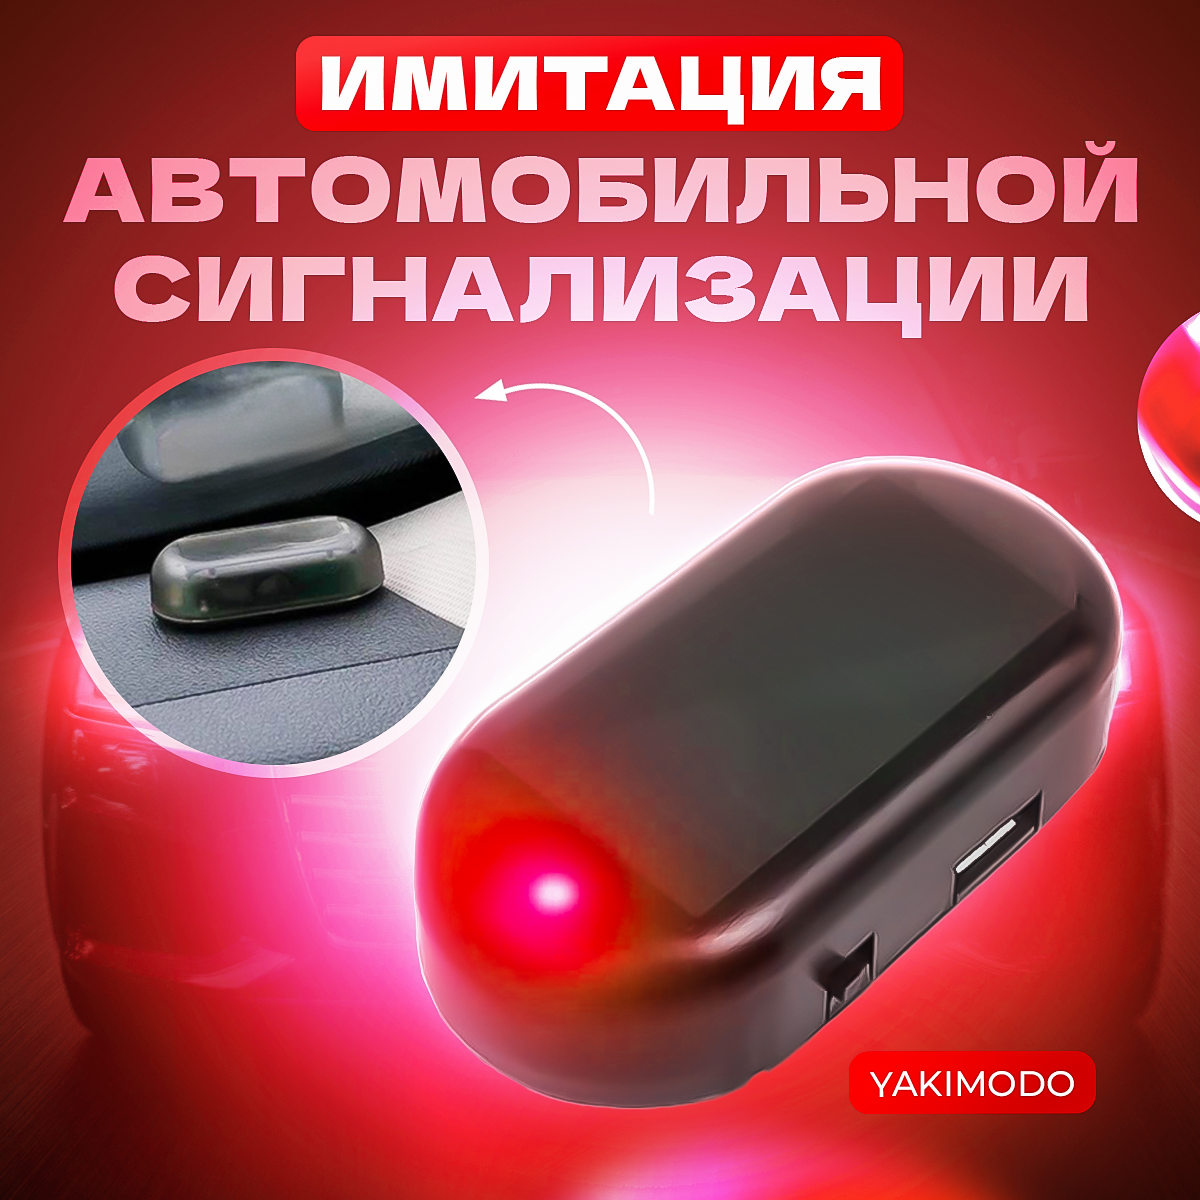 Муляж имитация охранной сигнализации YAKIMODO, для авто и дома, цвет красный